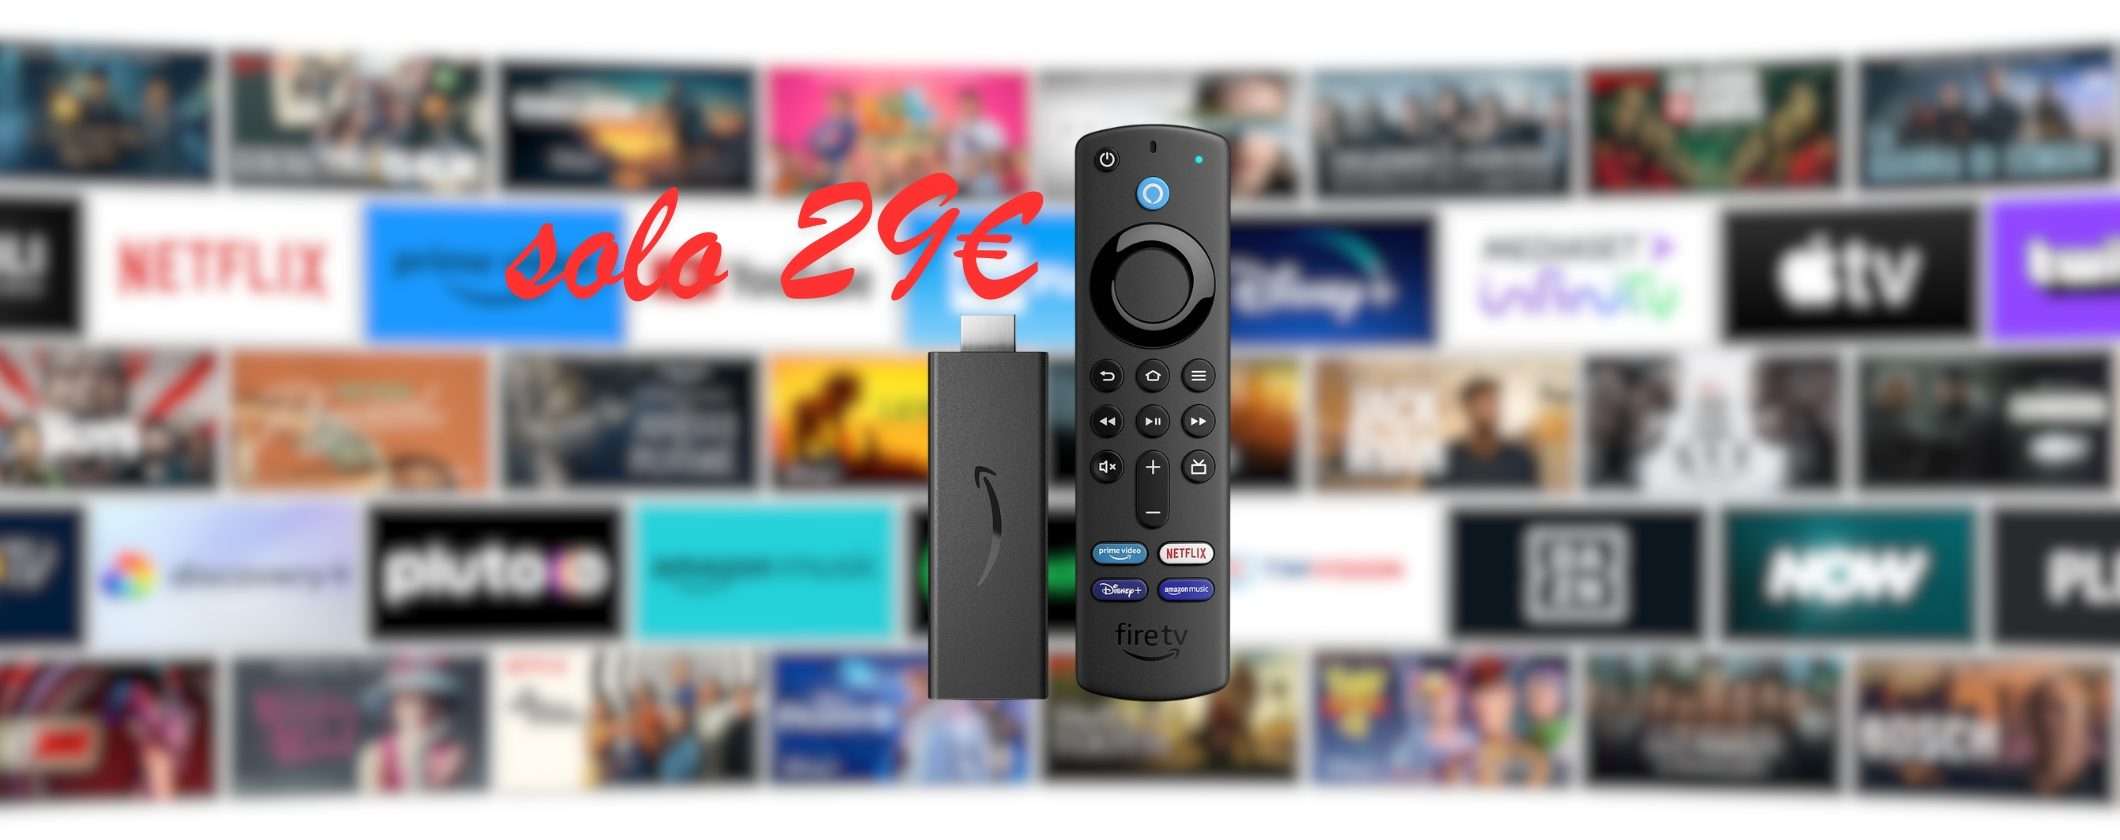 Fire TV Stick + Telecomando Alexa: solo 29€ su Amazon